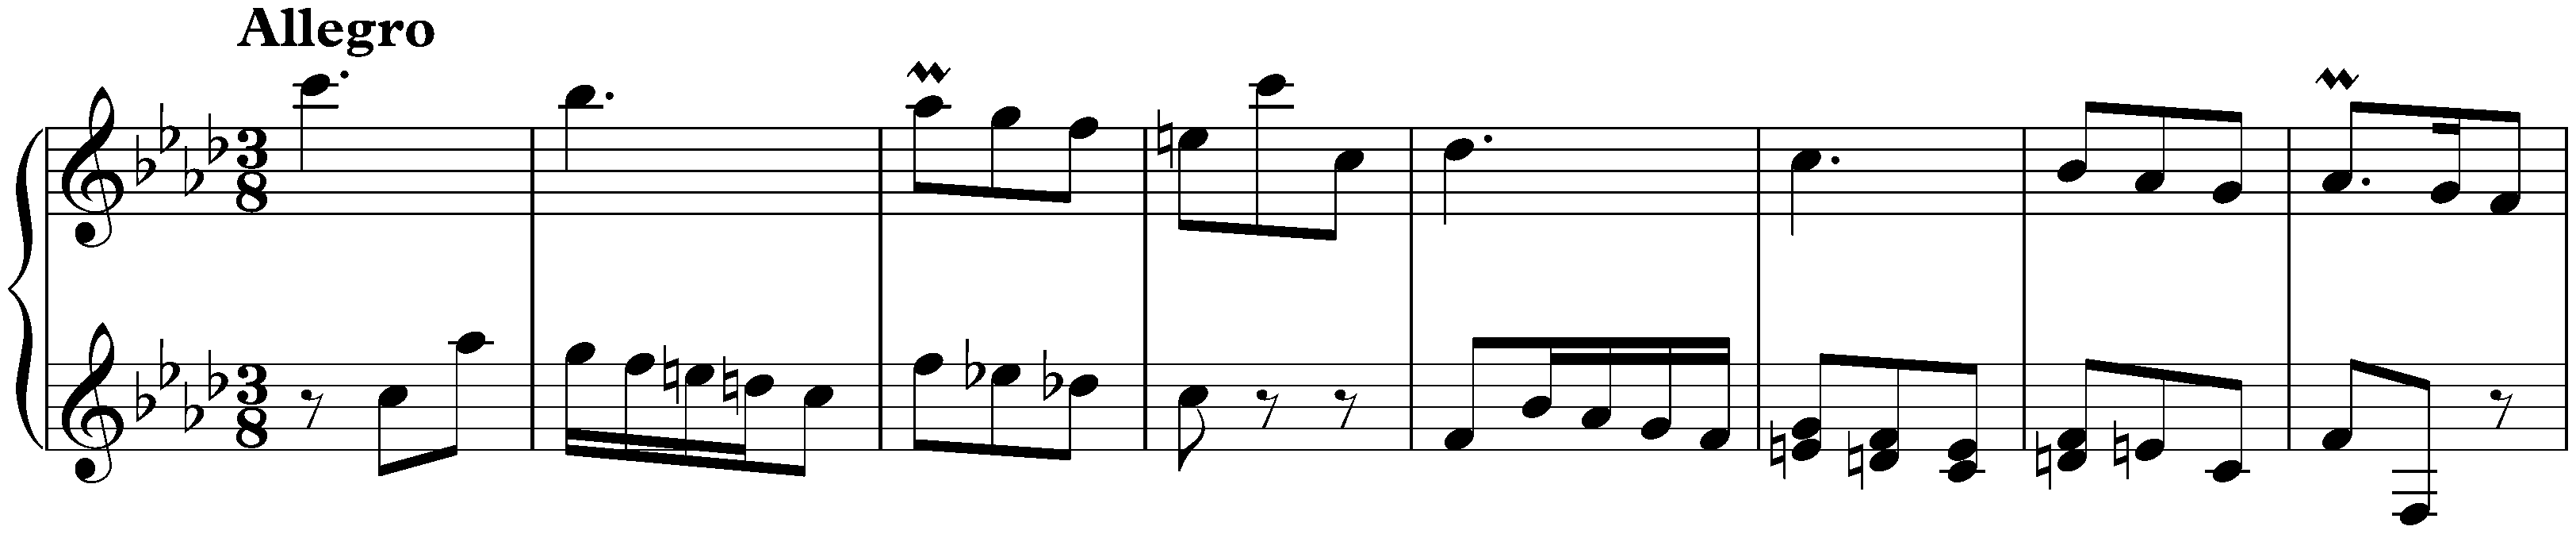 Sonata in F minor, K. 184